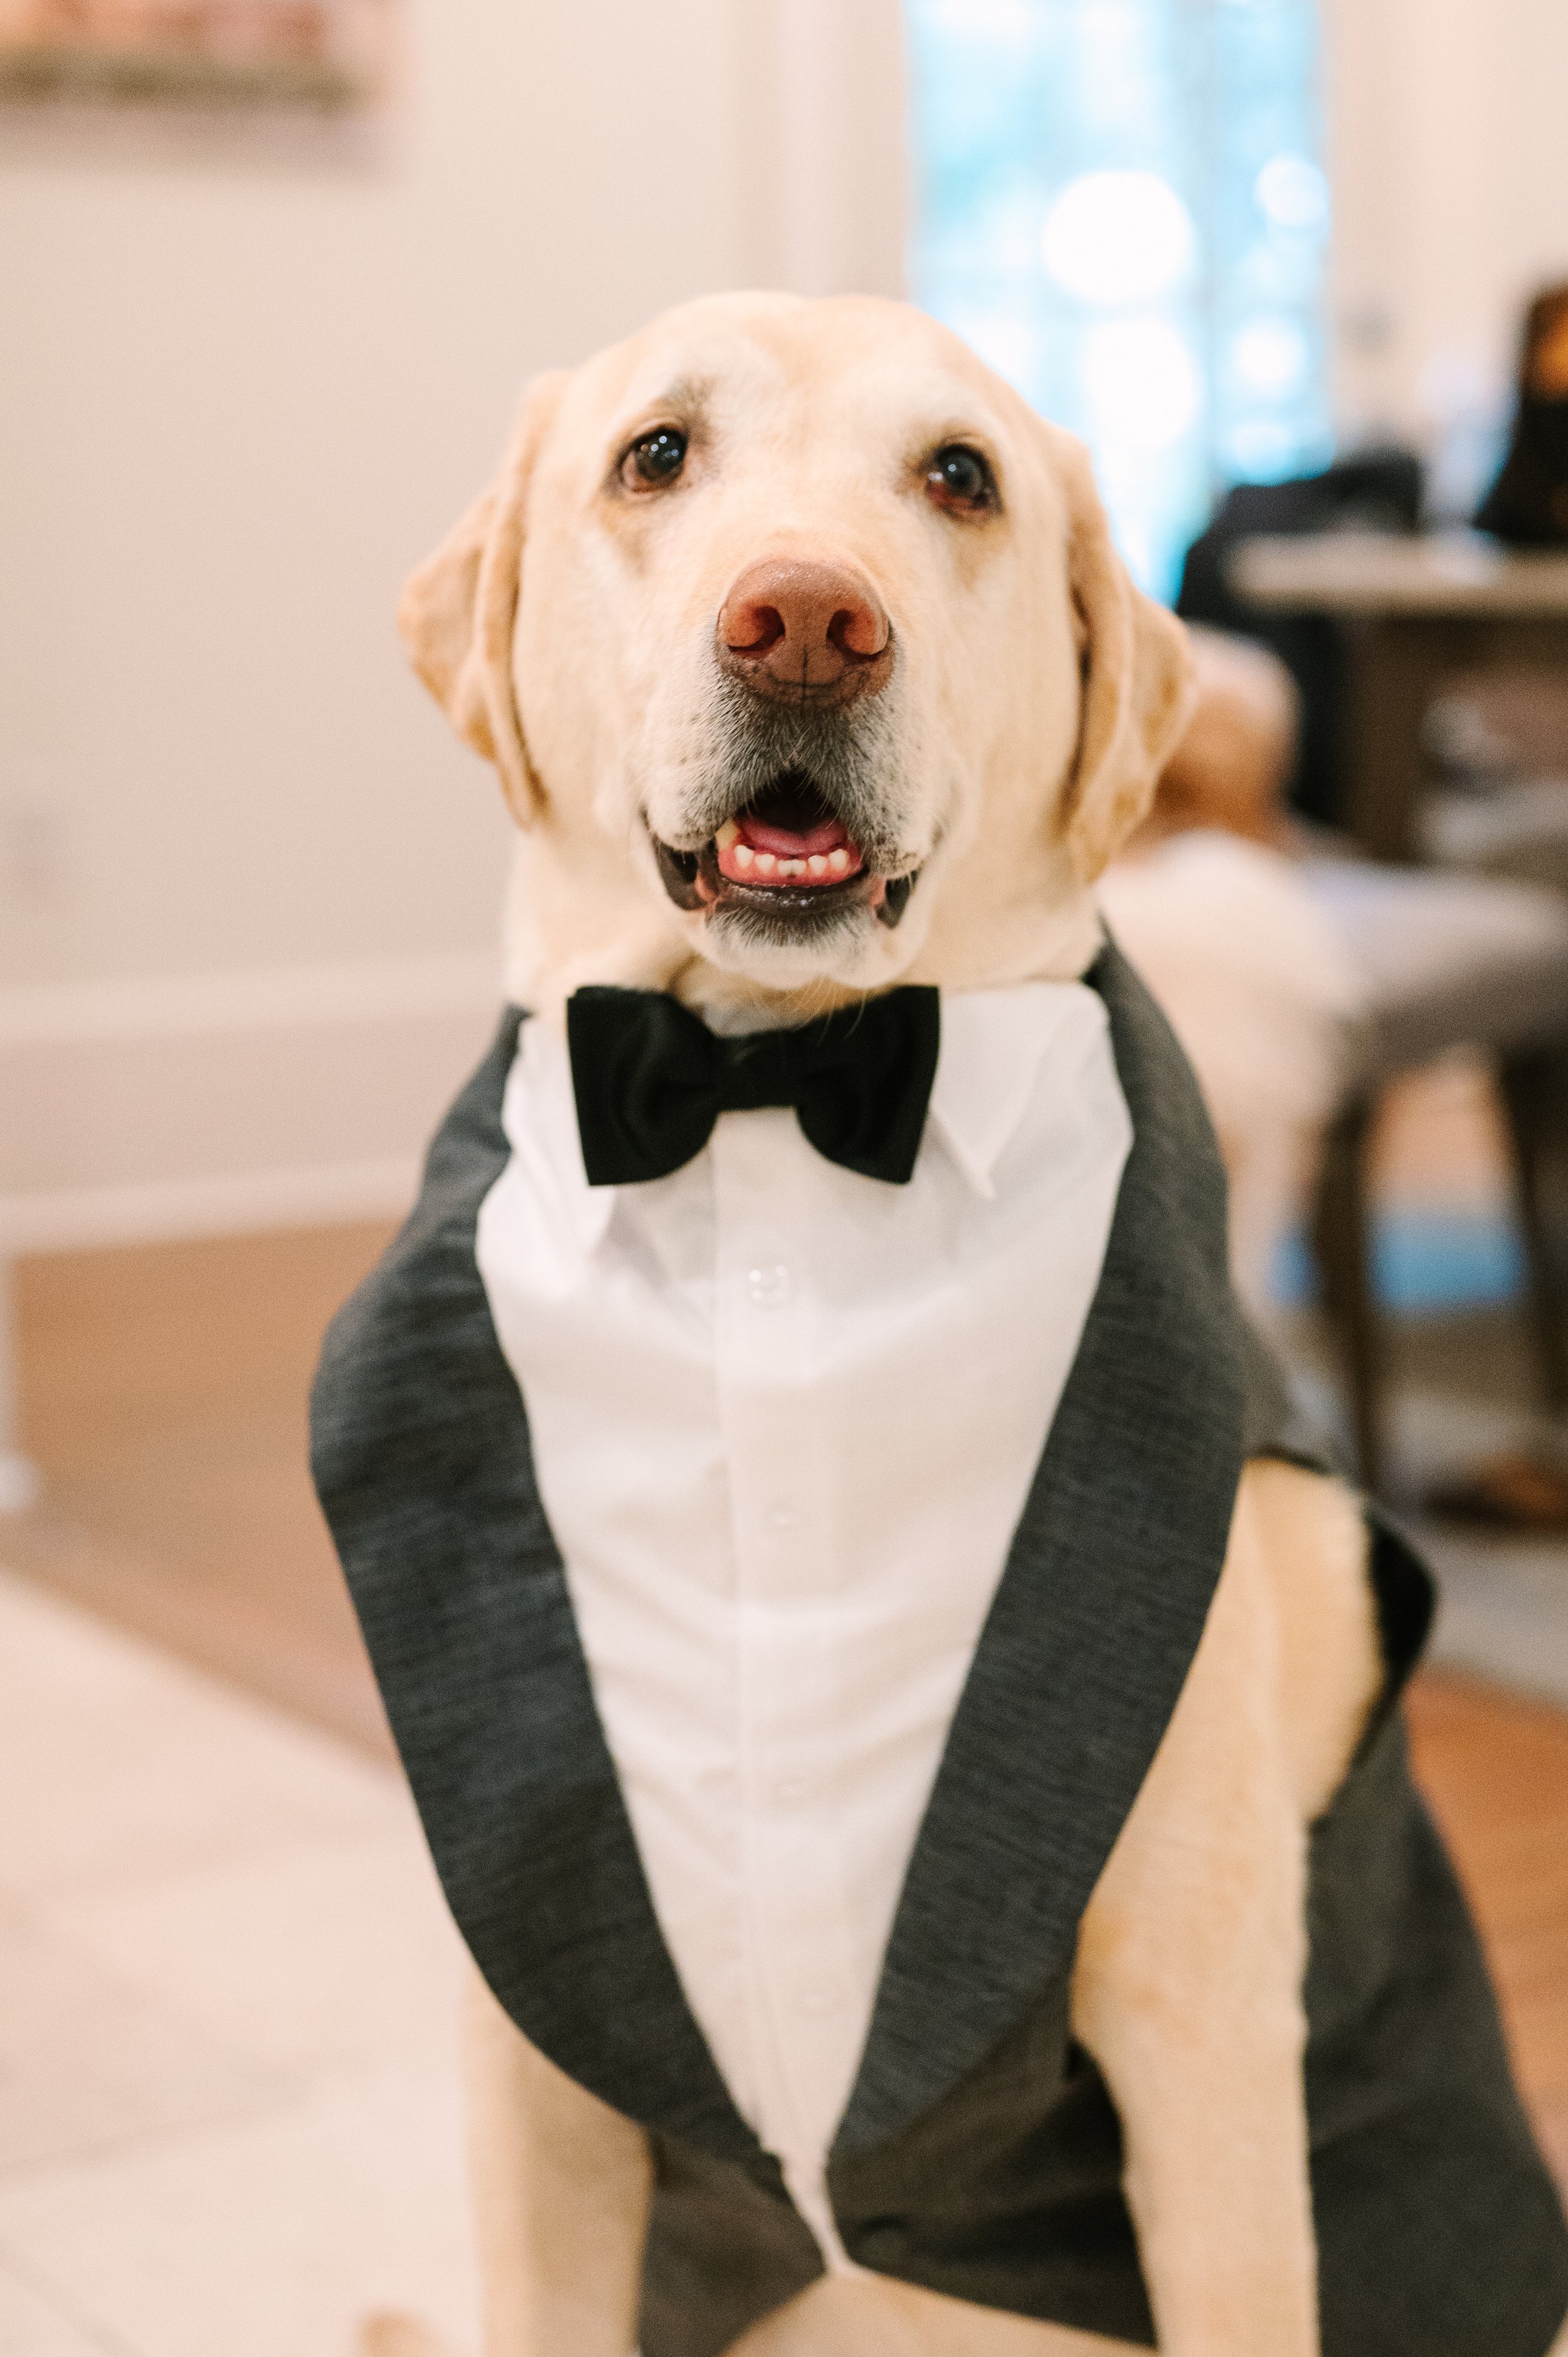 dog at wedding in tuxedo